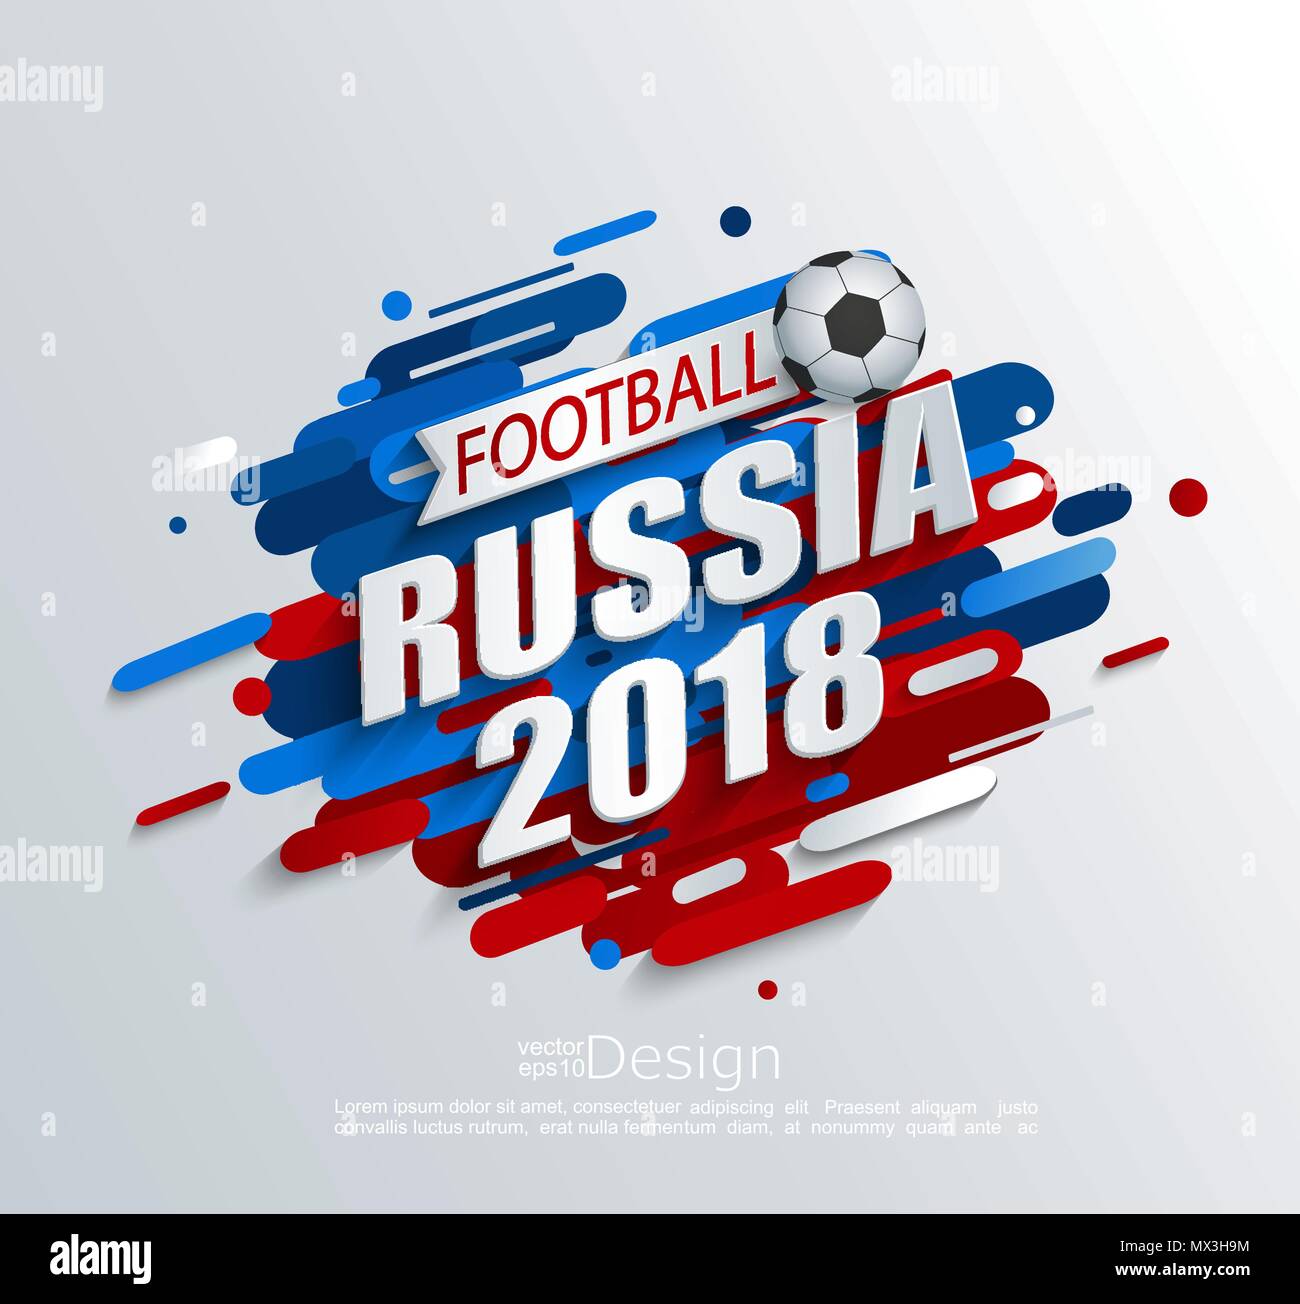 Illustrazione Vettoriale per una coppa di calcio 2018 con sfondo dinamico e la sfera. Per il campionato di calcio.Perfetta per le schede di progettazione, inviti, carte regalo, volantini, brochure, banner e così via. Illustrazione Vettoriale